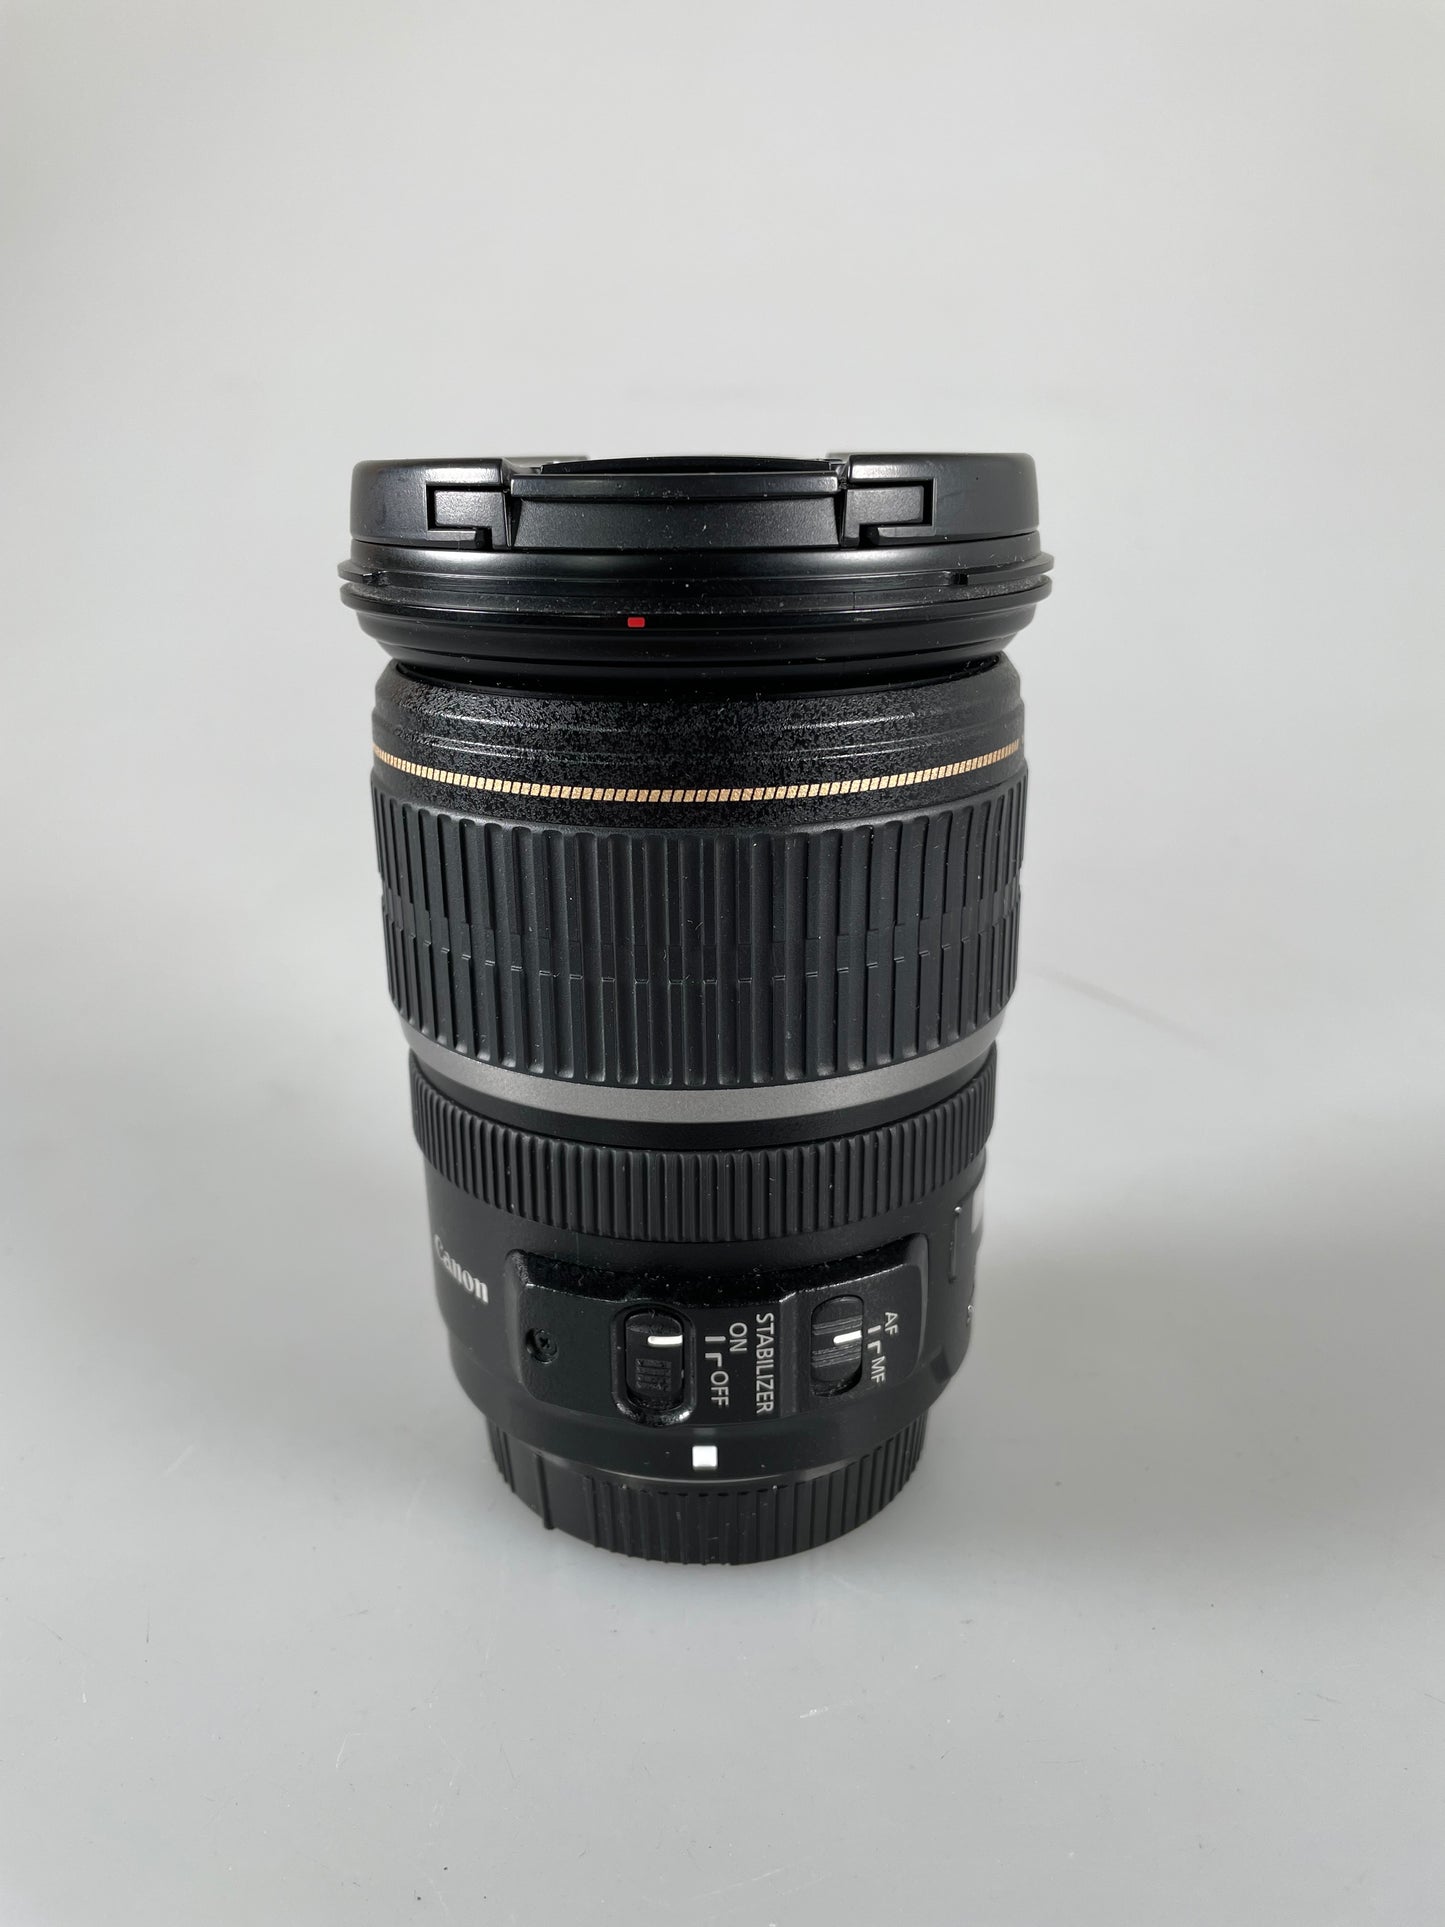 Canon EF-S 17-55mm f2.8 AF IS USM Lens